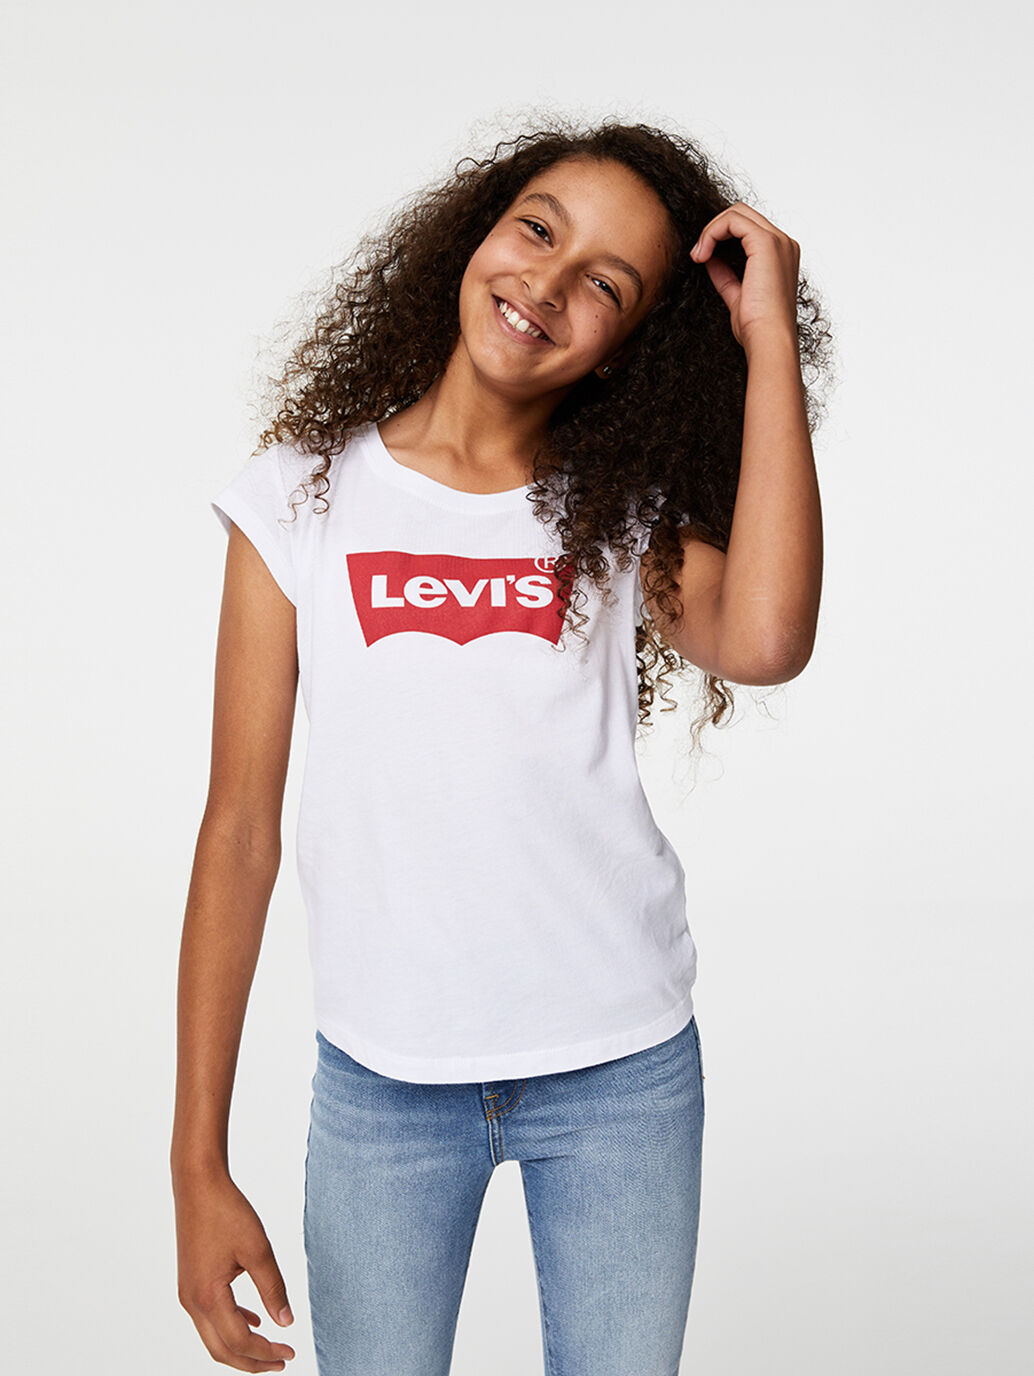 levi's kidswear australia